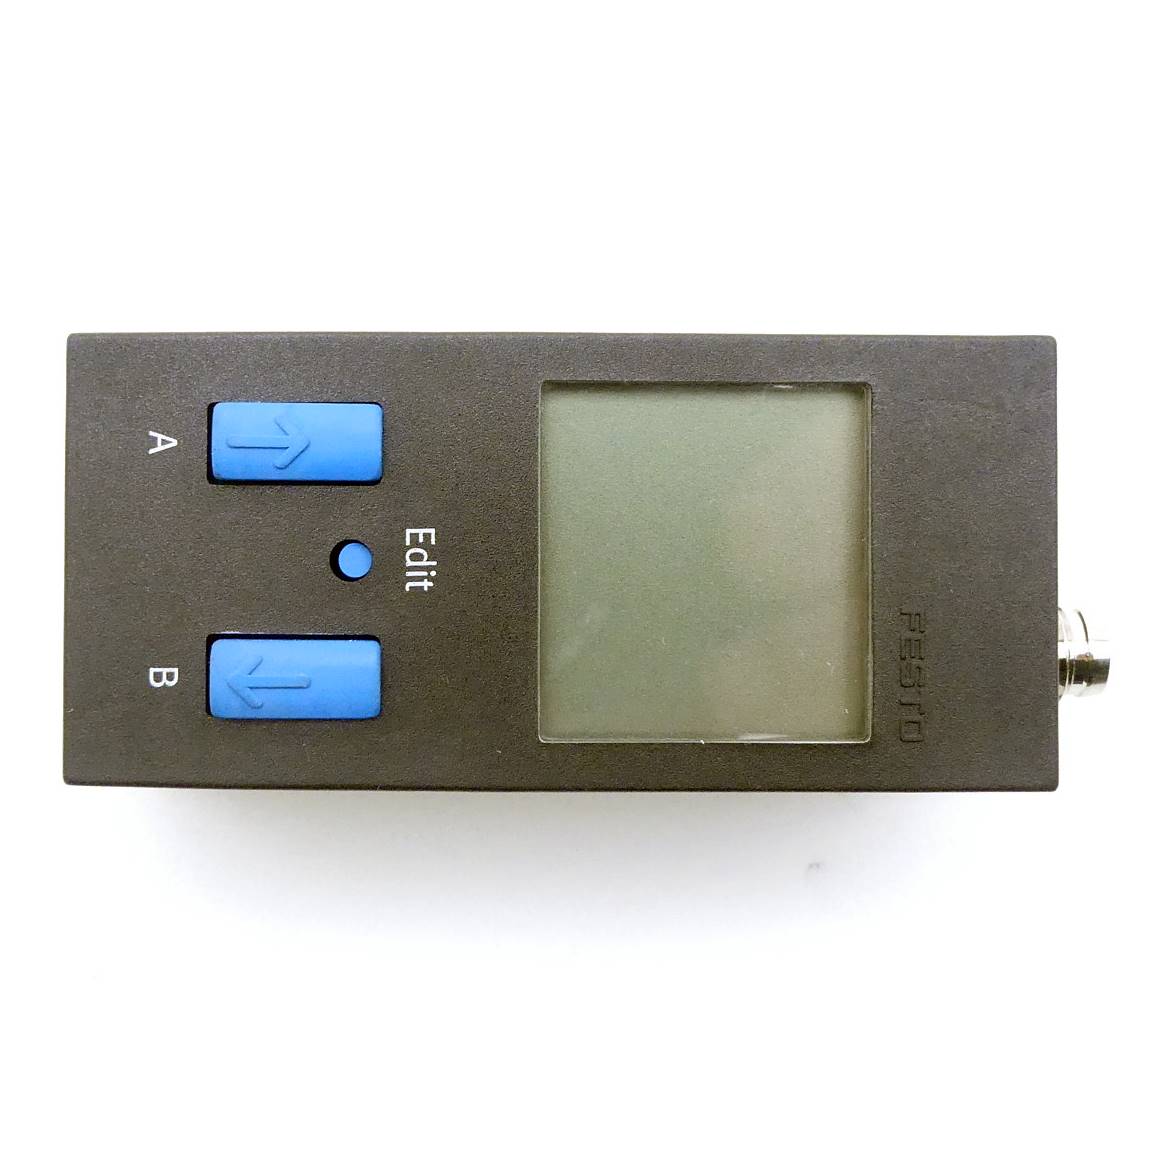 Pressure / vacuum sensor  SDE1-D10-G2-H18-C-P2-M8 